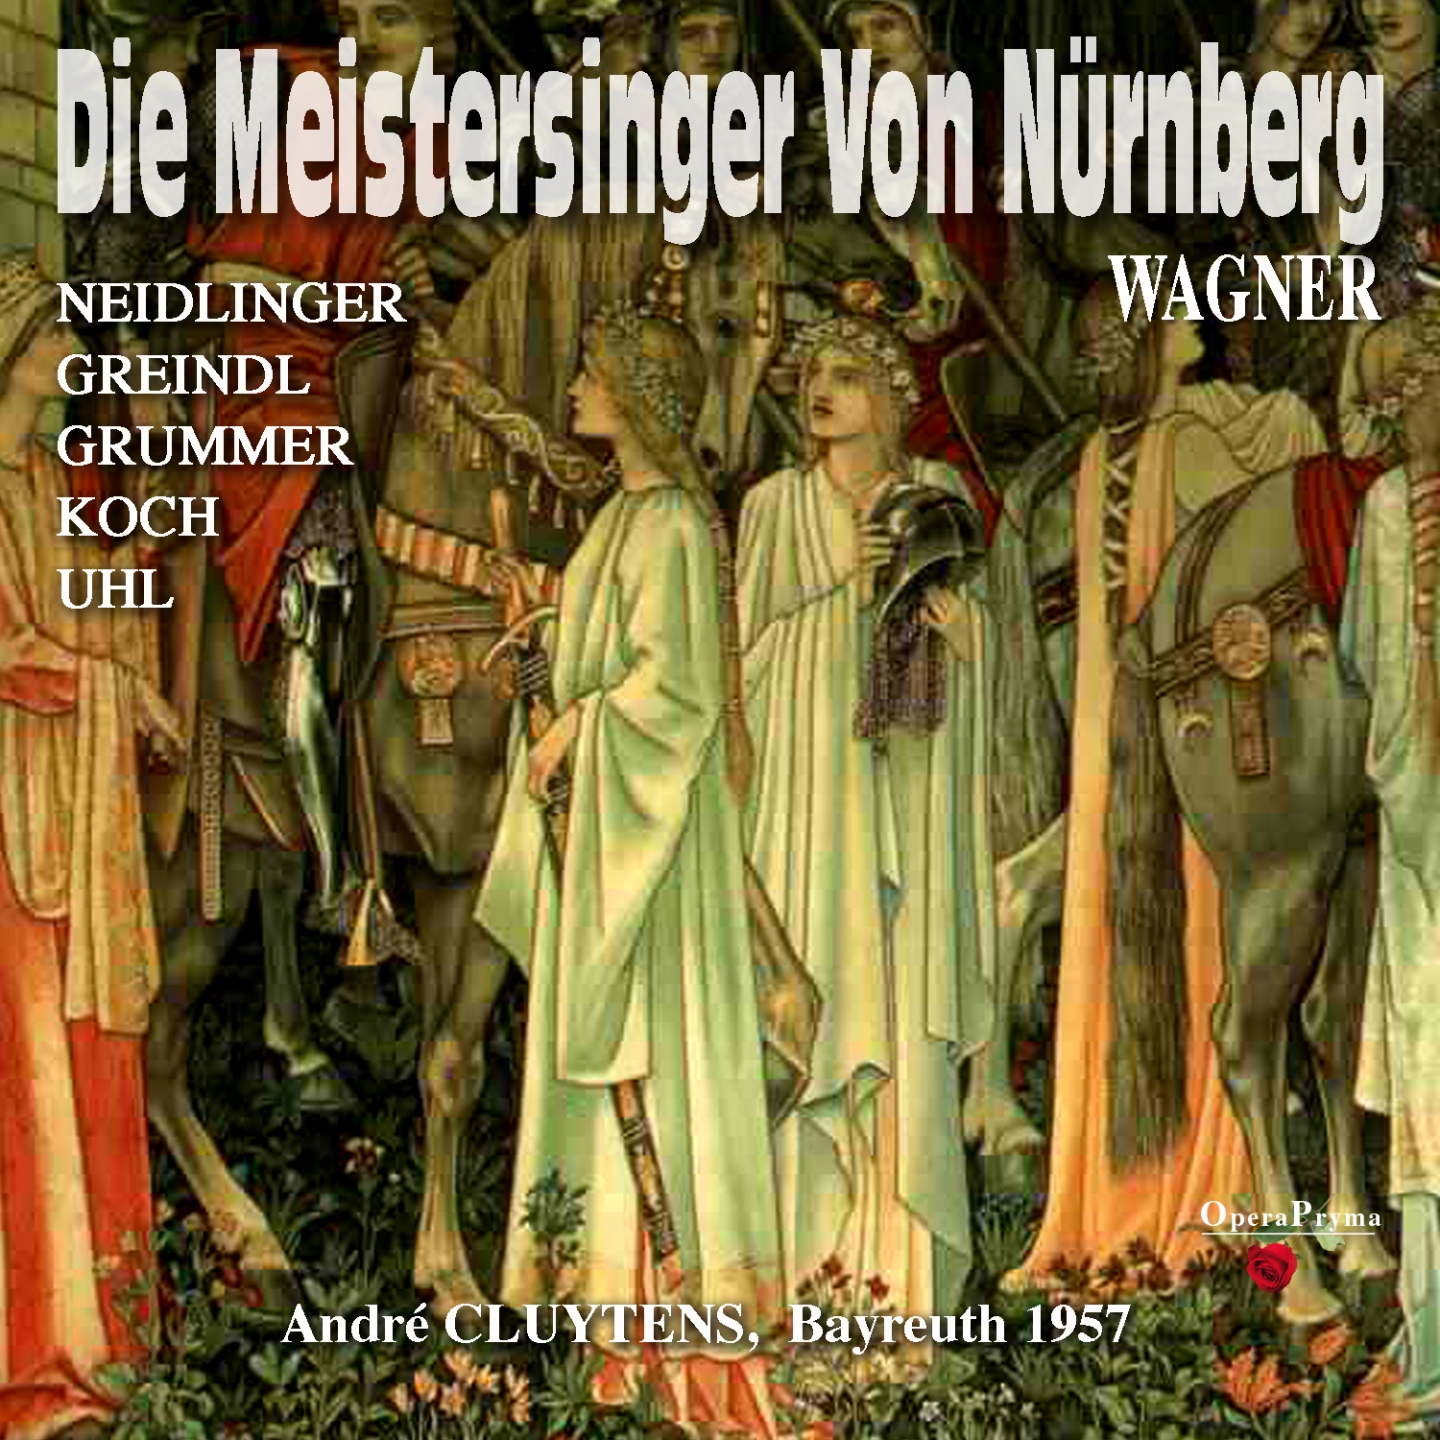 Die Meistersinger von Nü rnberg, Act I: " Halt! Meister! Nicht so geeilt!" Hans Sachs, Beckmesser